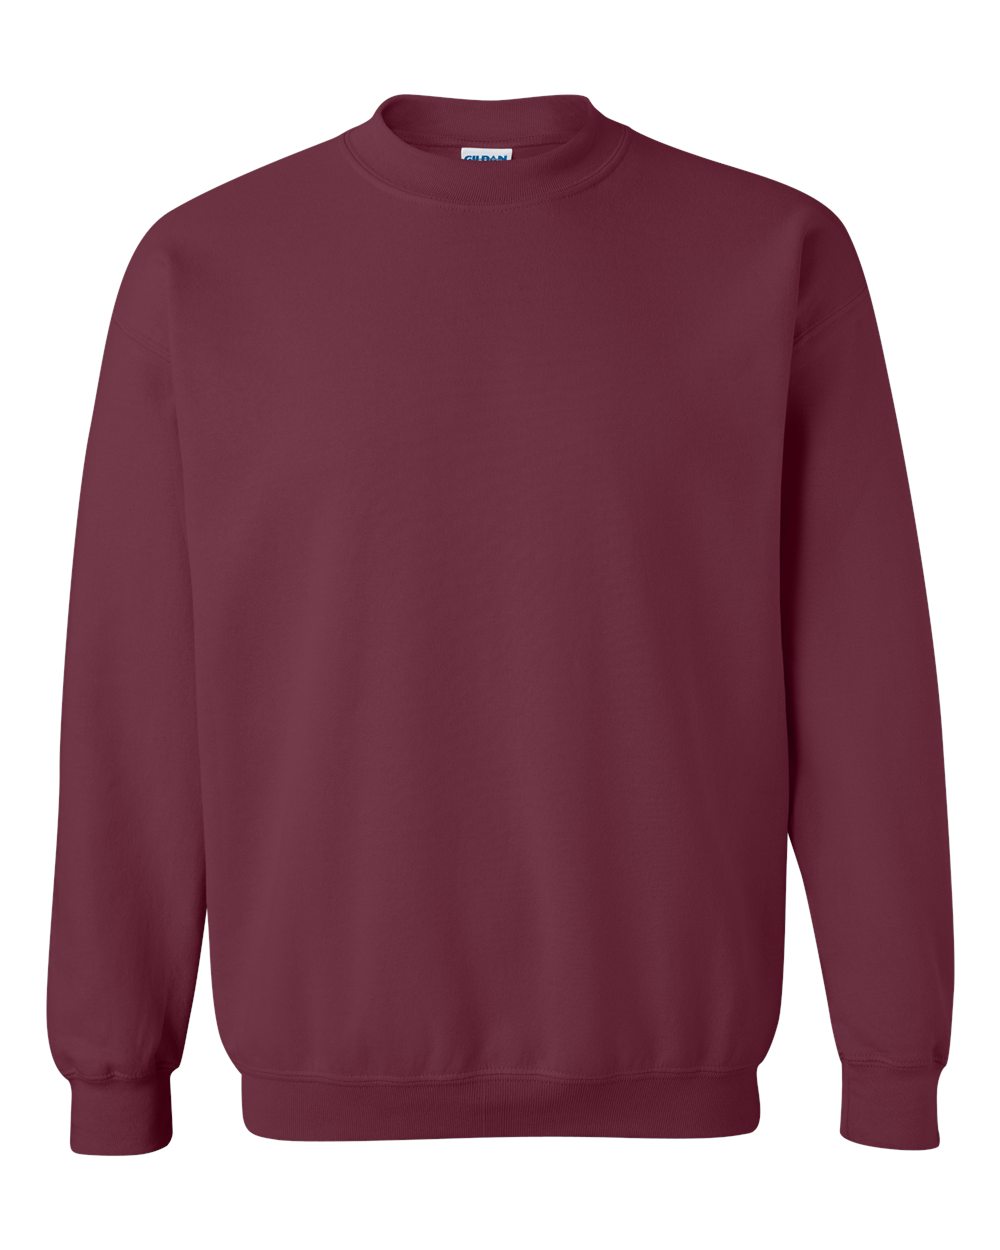 Gildan Crewneck Sweatshirt (18000) in Maroon